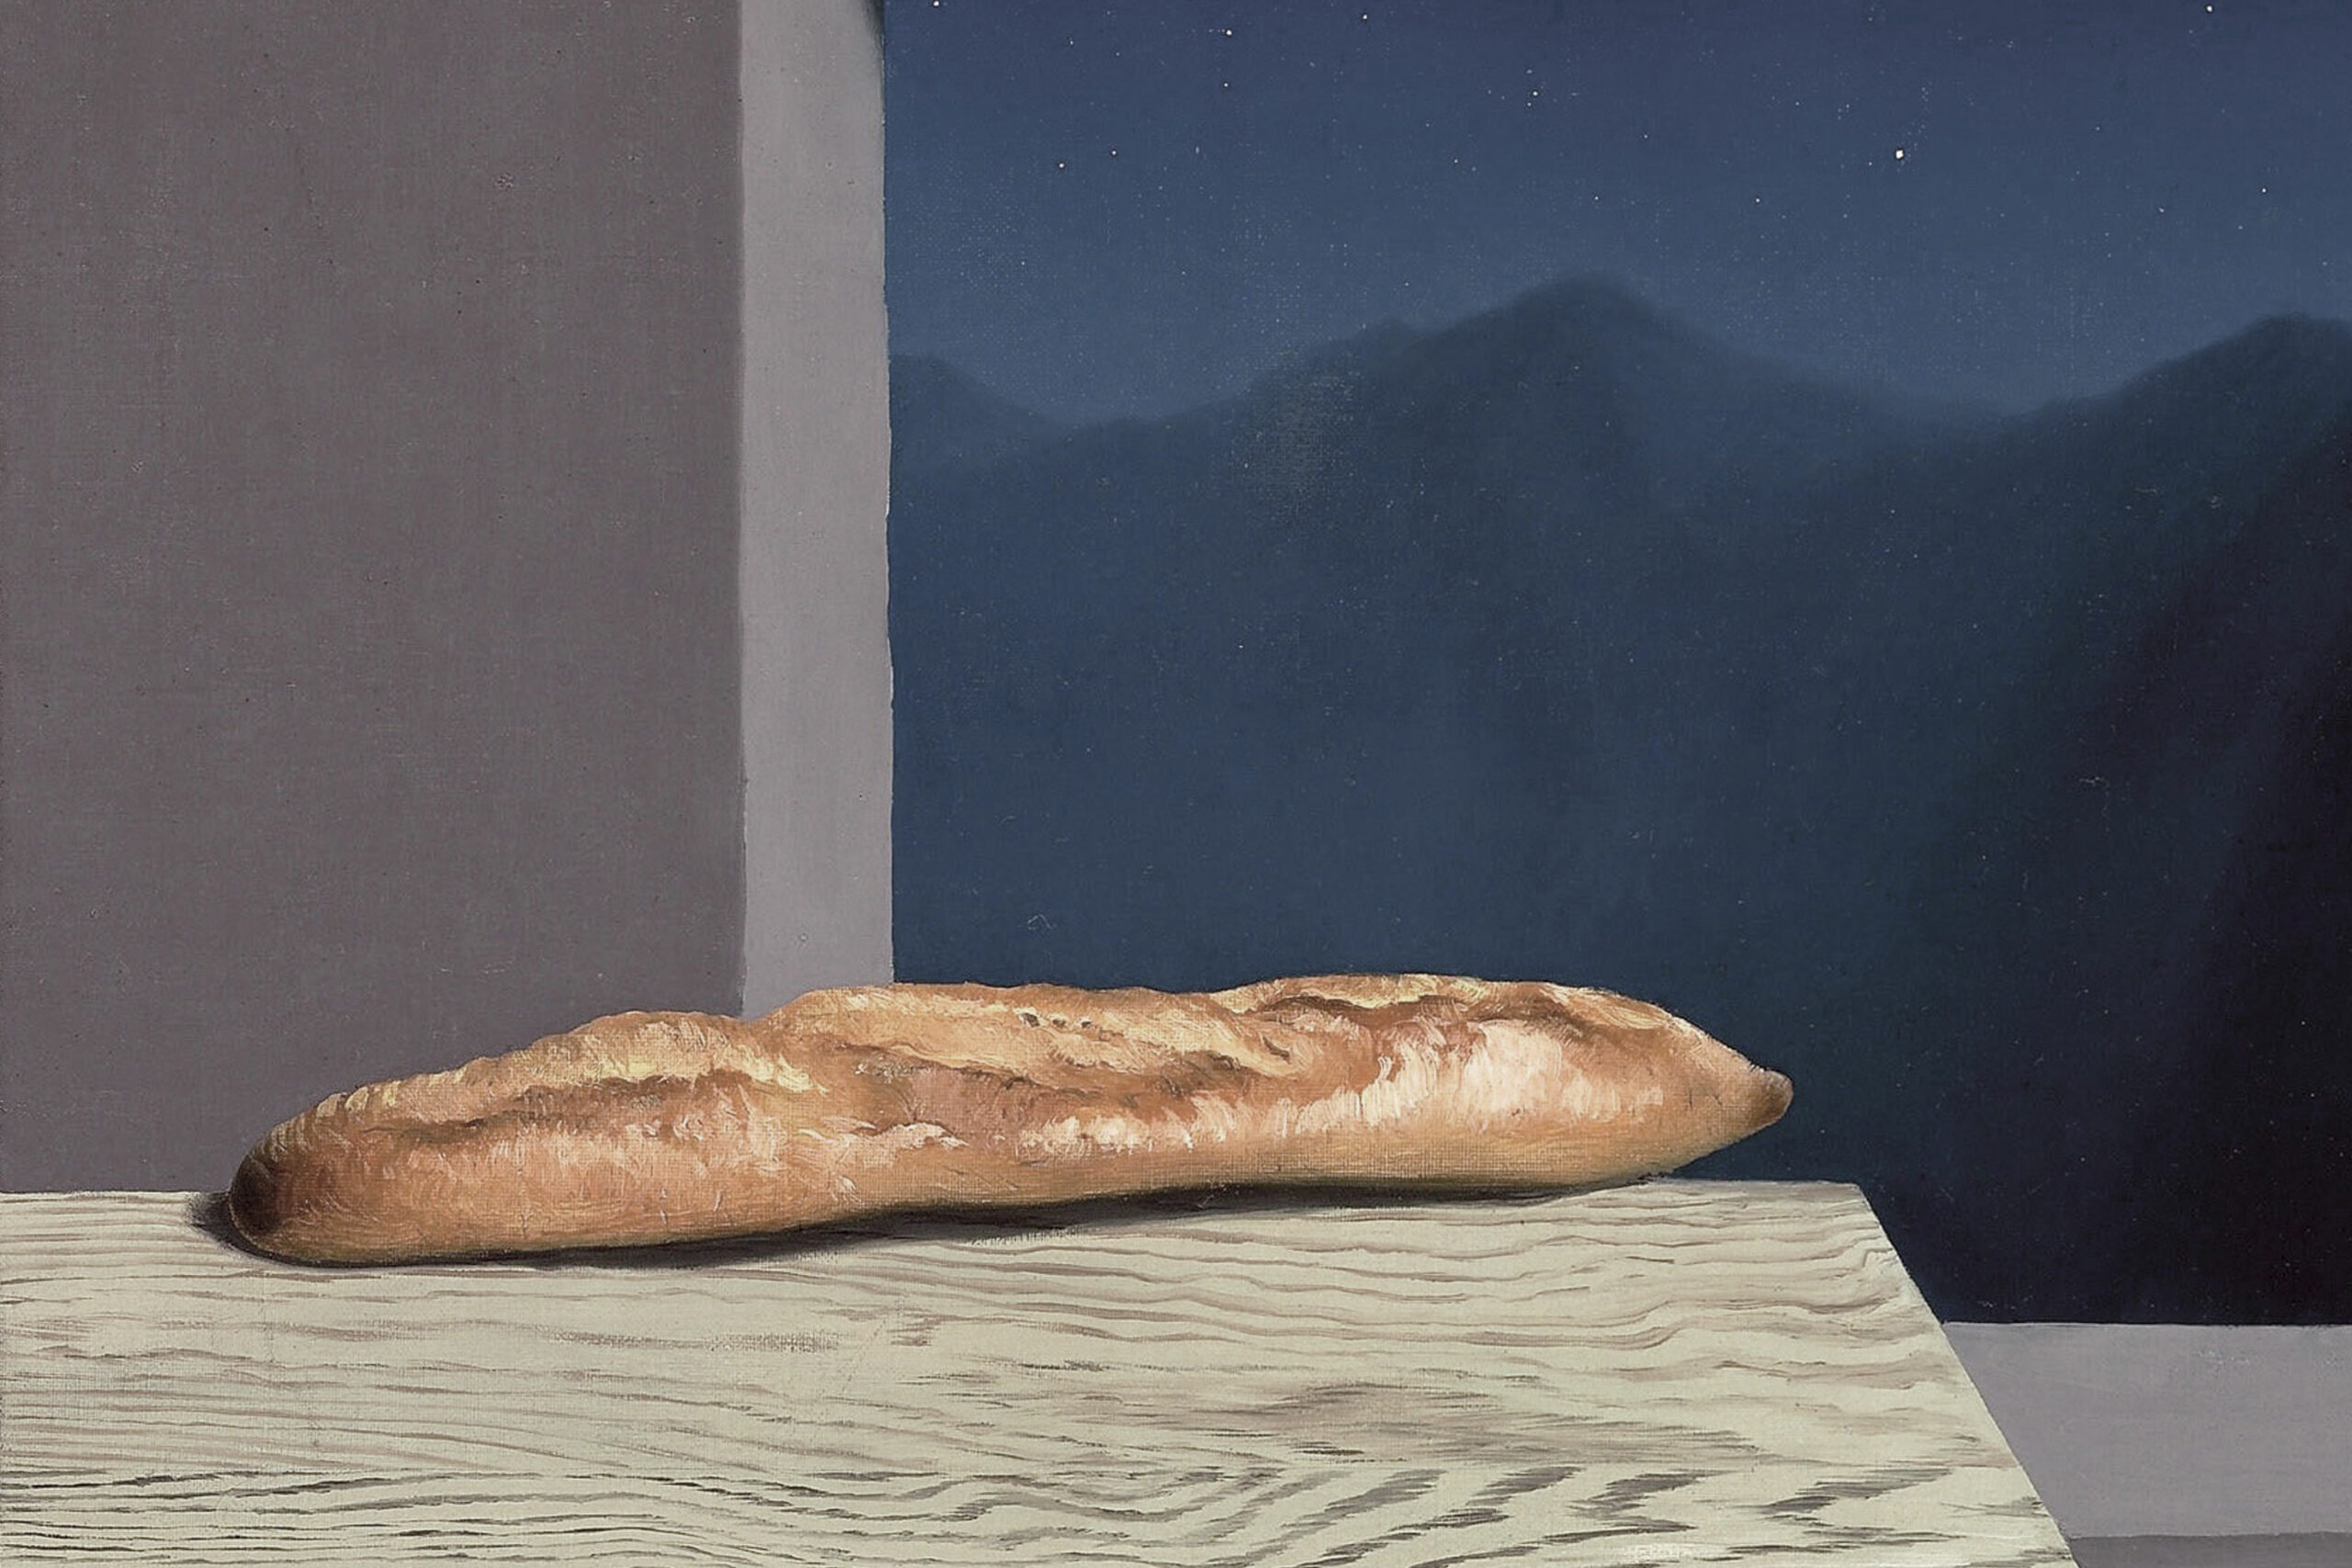  L'avenir, huile sur toile de René Magritte, 1936.